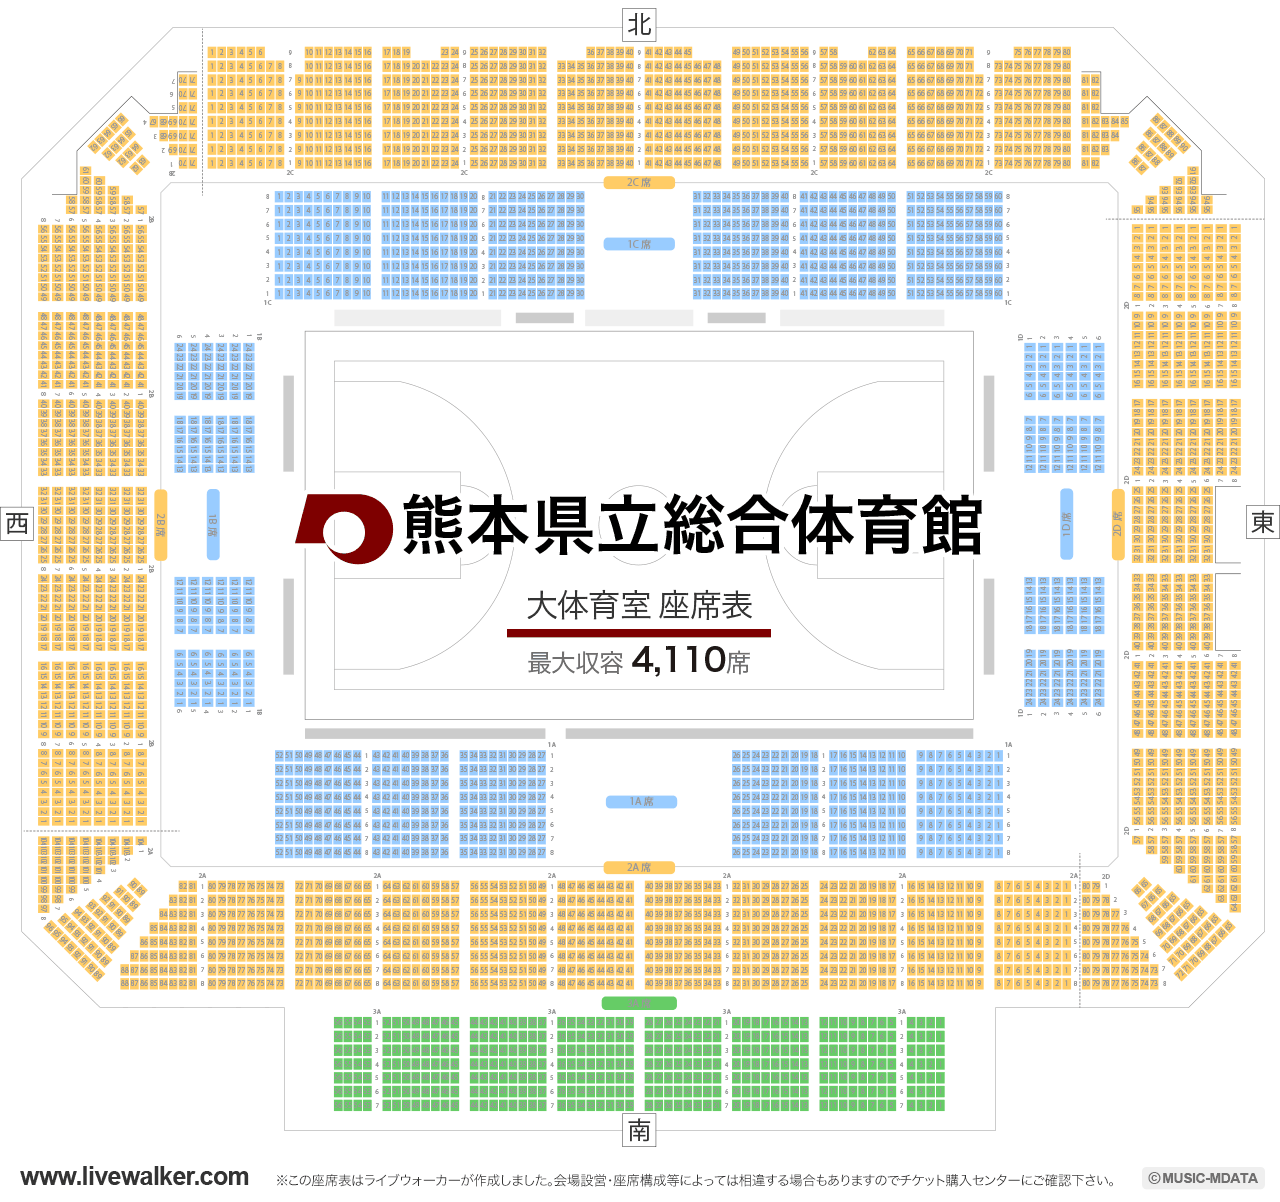 熊本県立総合体育館大体育室の座席表